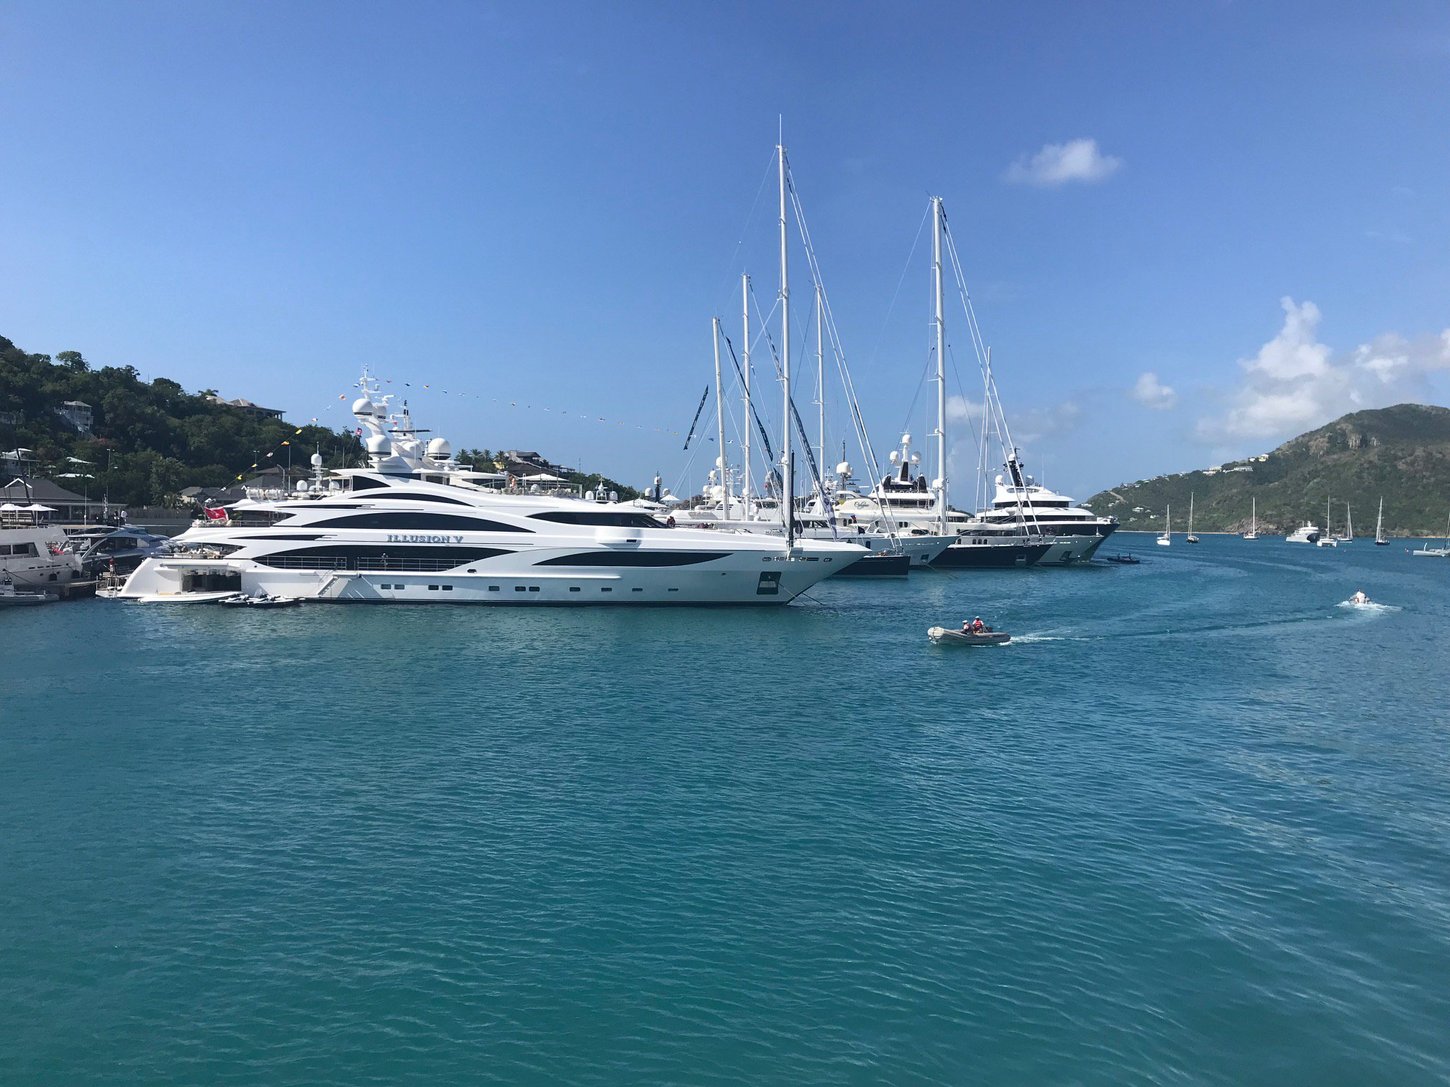 Antigua Charter Yacht Show 2018 Yacht Charter Fleet